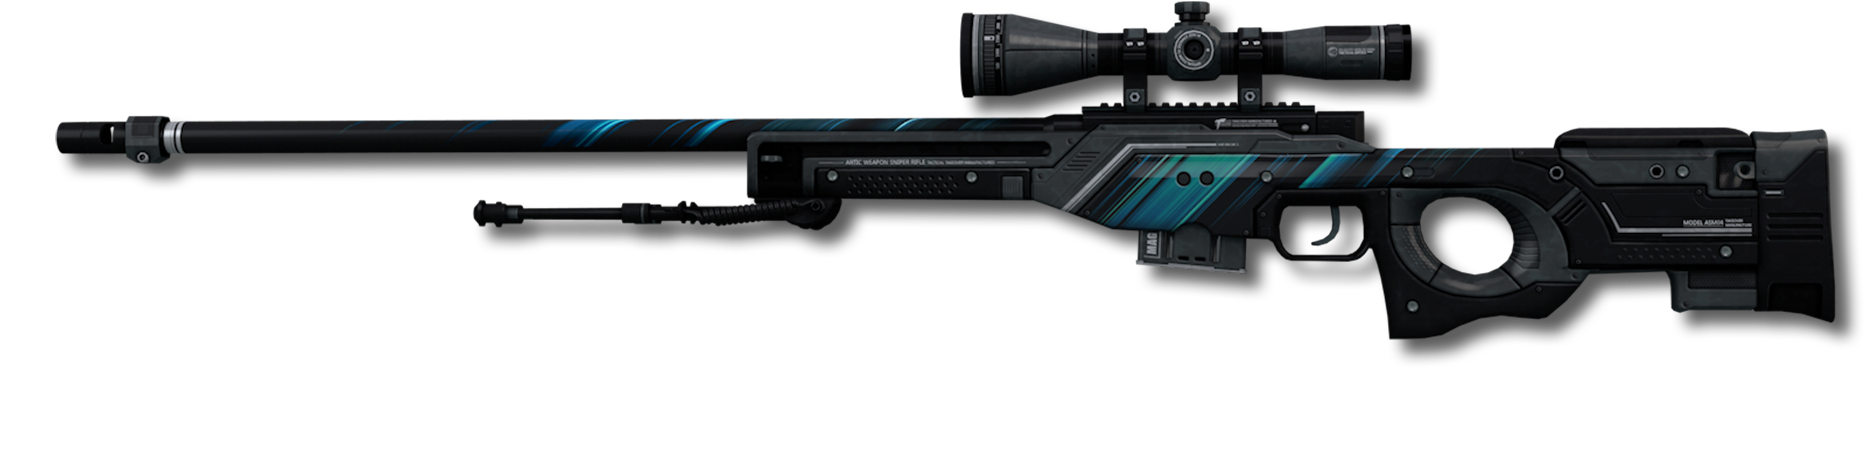 Futuristic Sniper Rifle Design